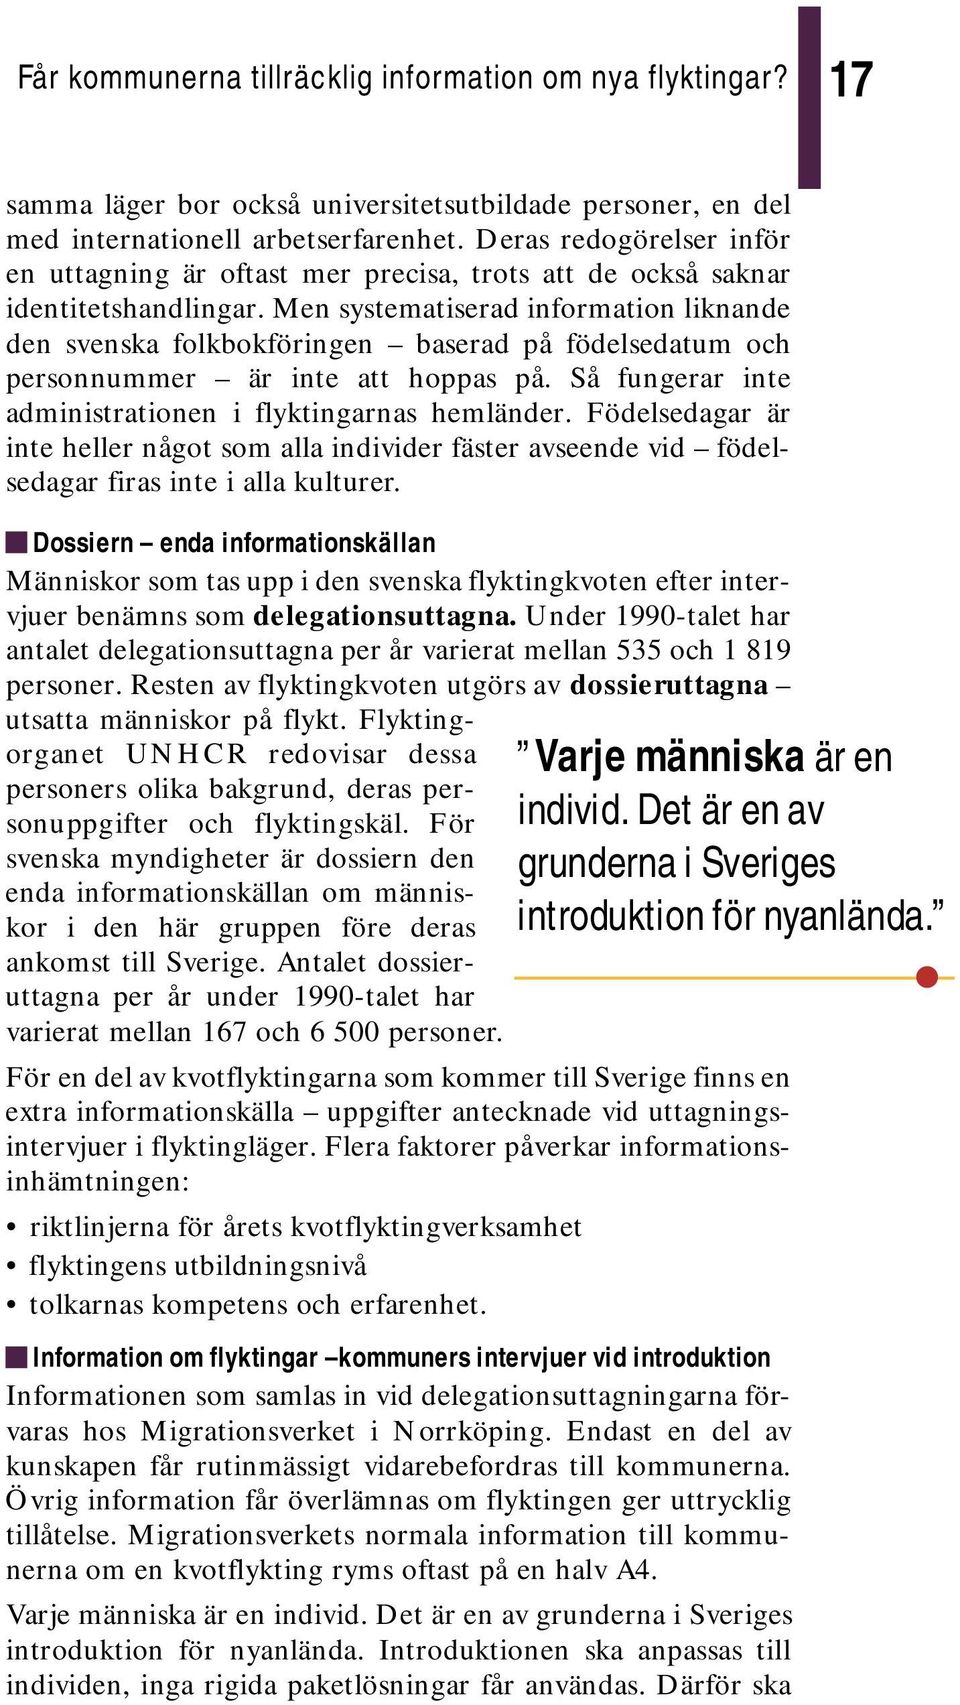 Men systematiserad information liknande den svenska folkbokföringen baserad på födelsedatum och personnummer är inte att hoppas på. Så fungerar inte administrationen i flyktingarnas hemländer.